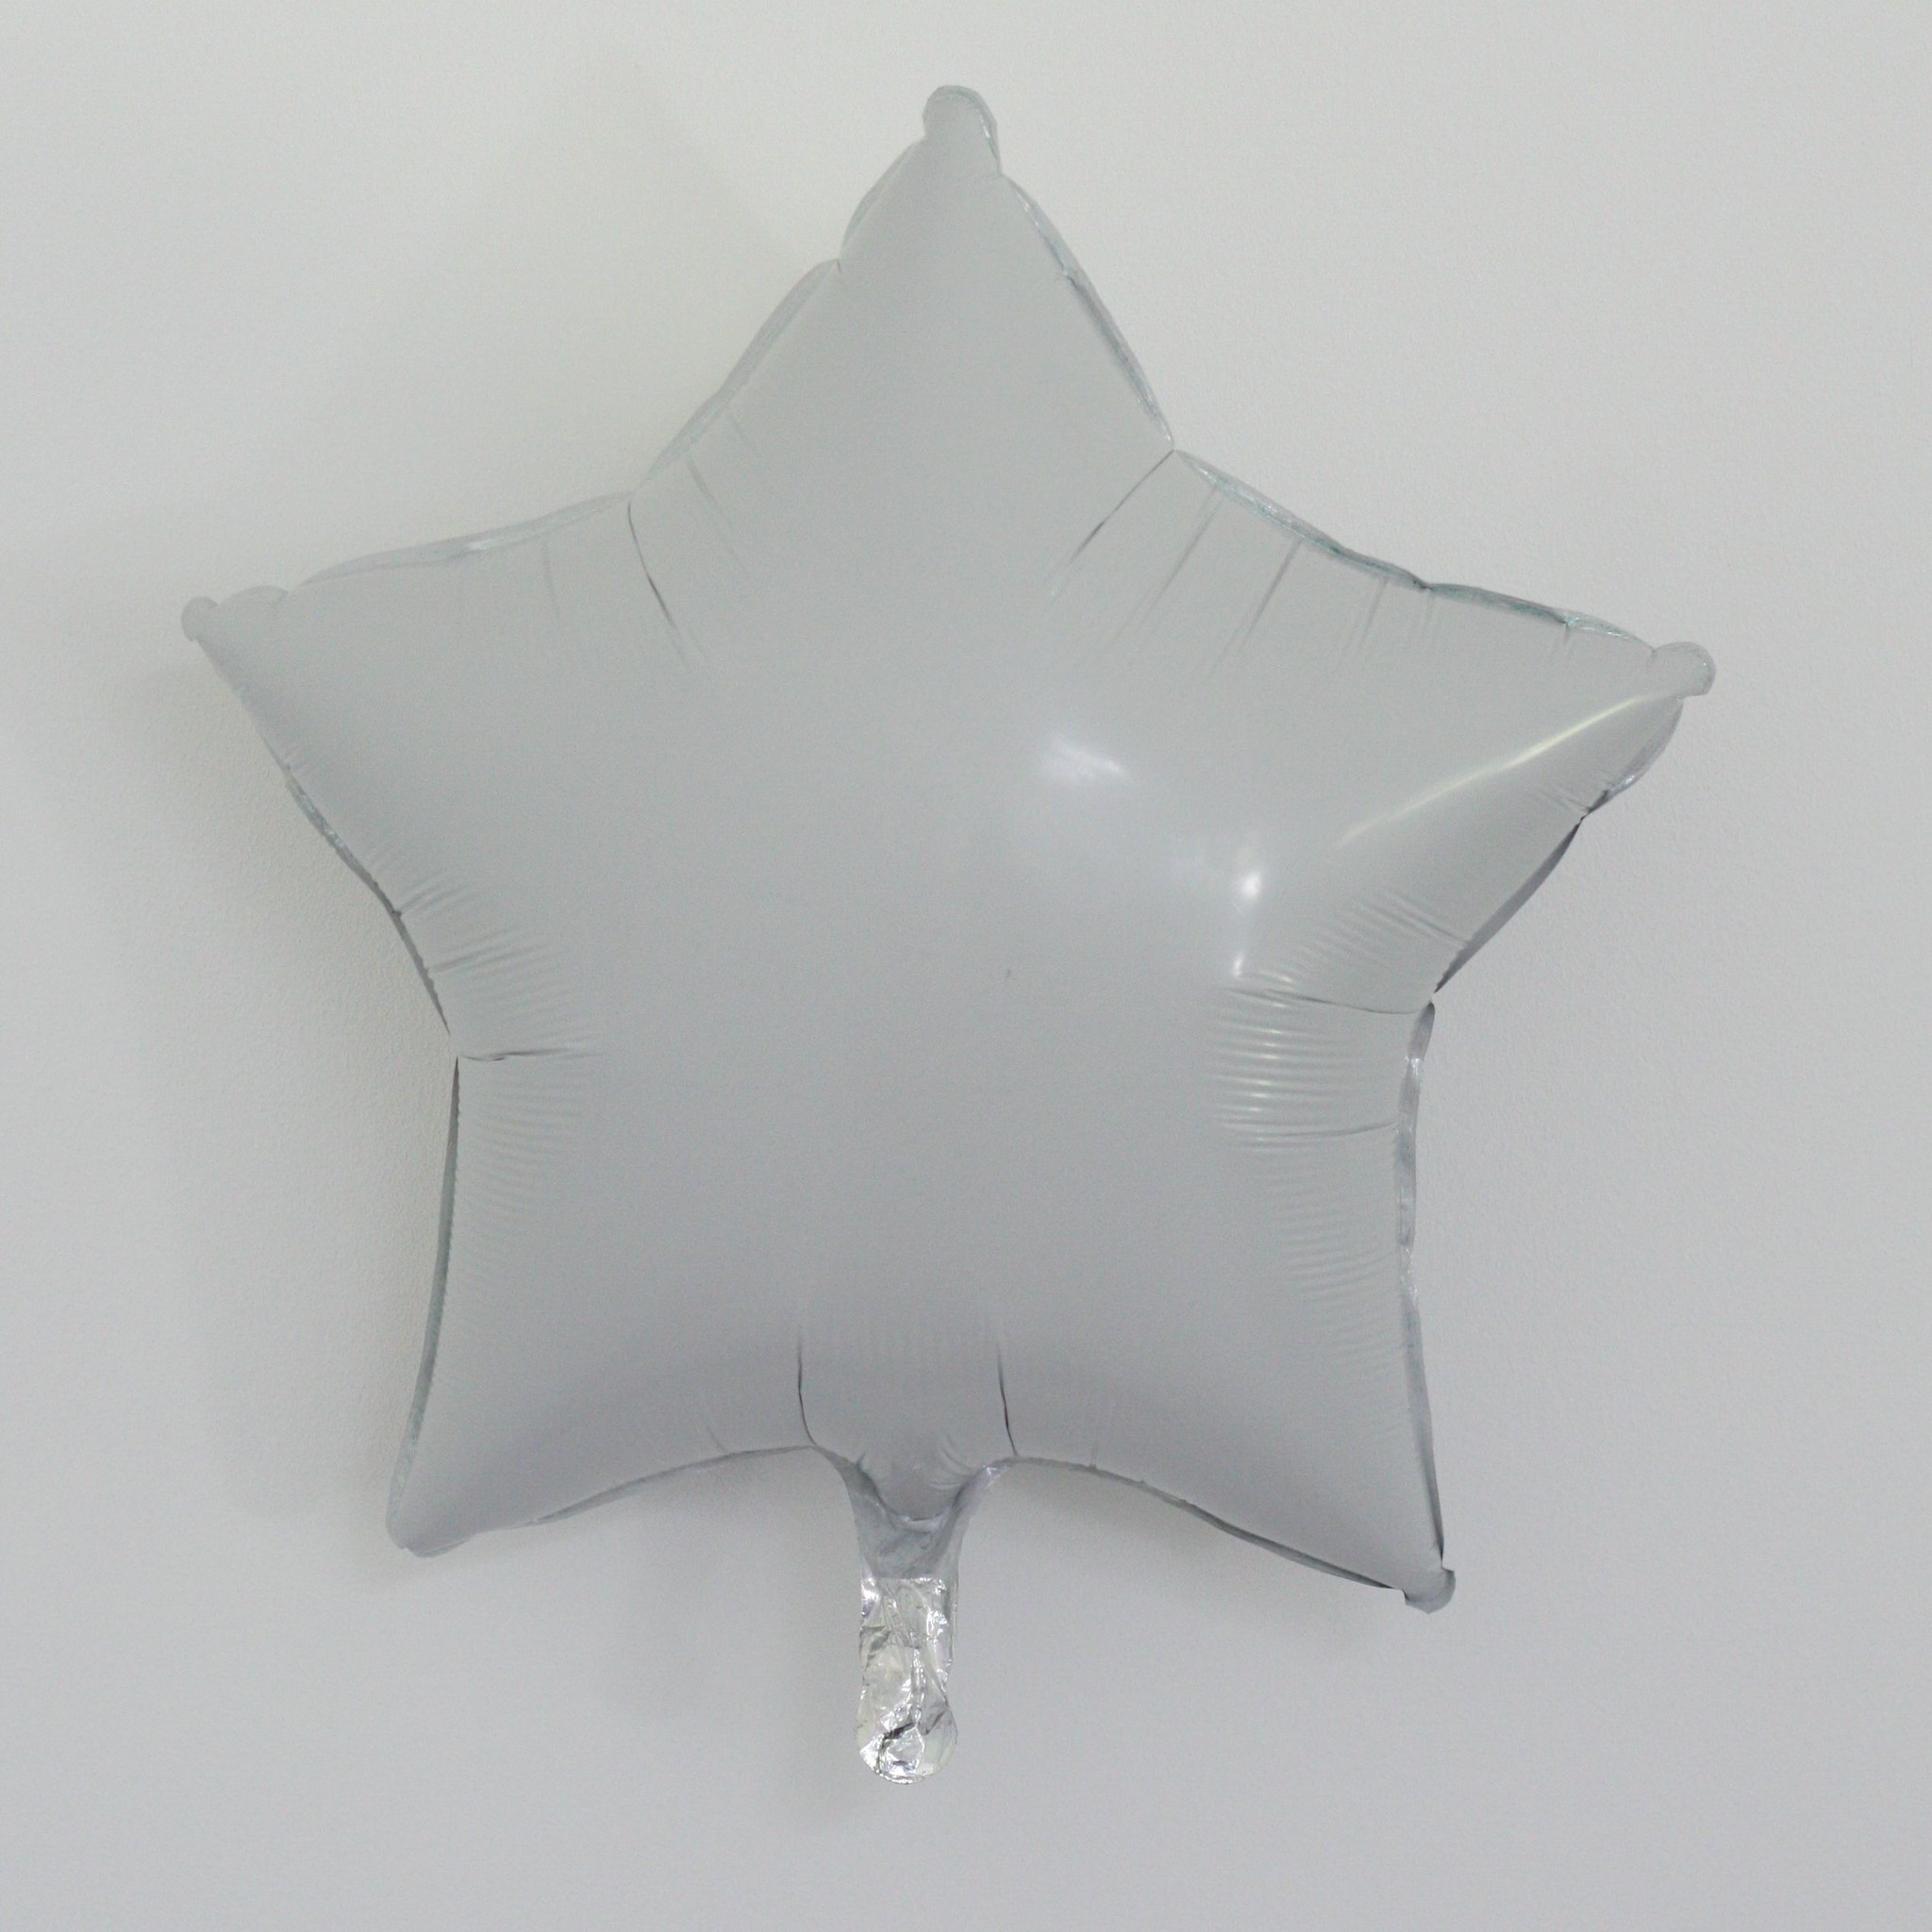 18" white Star Balloon